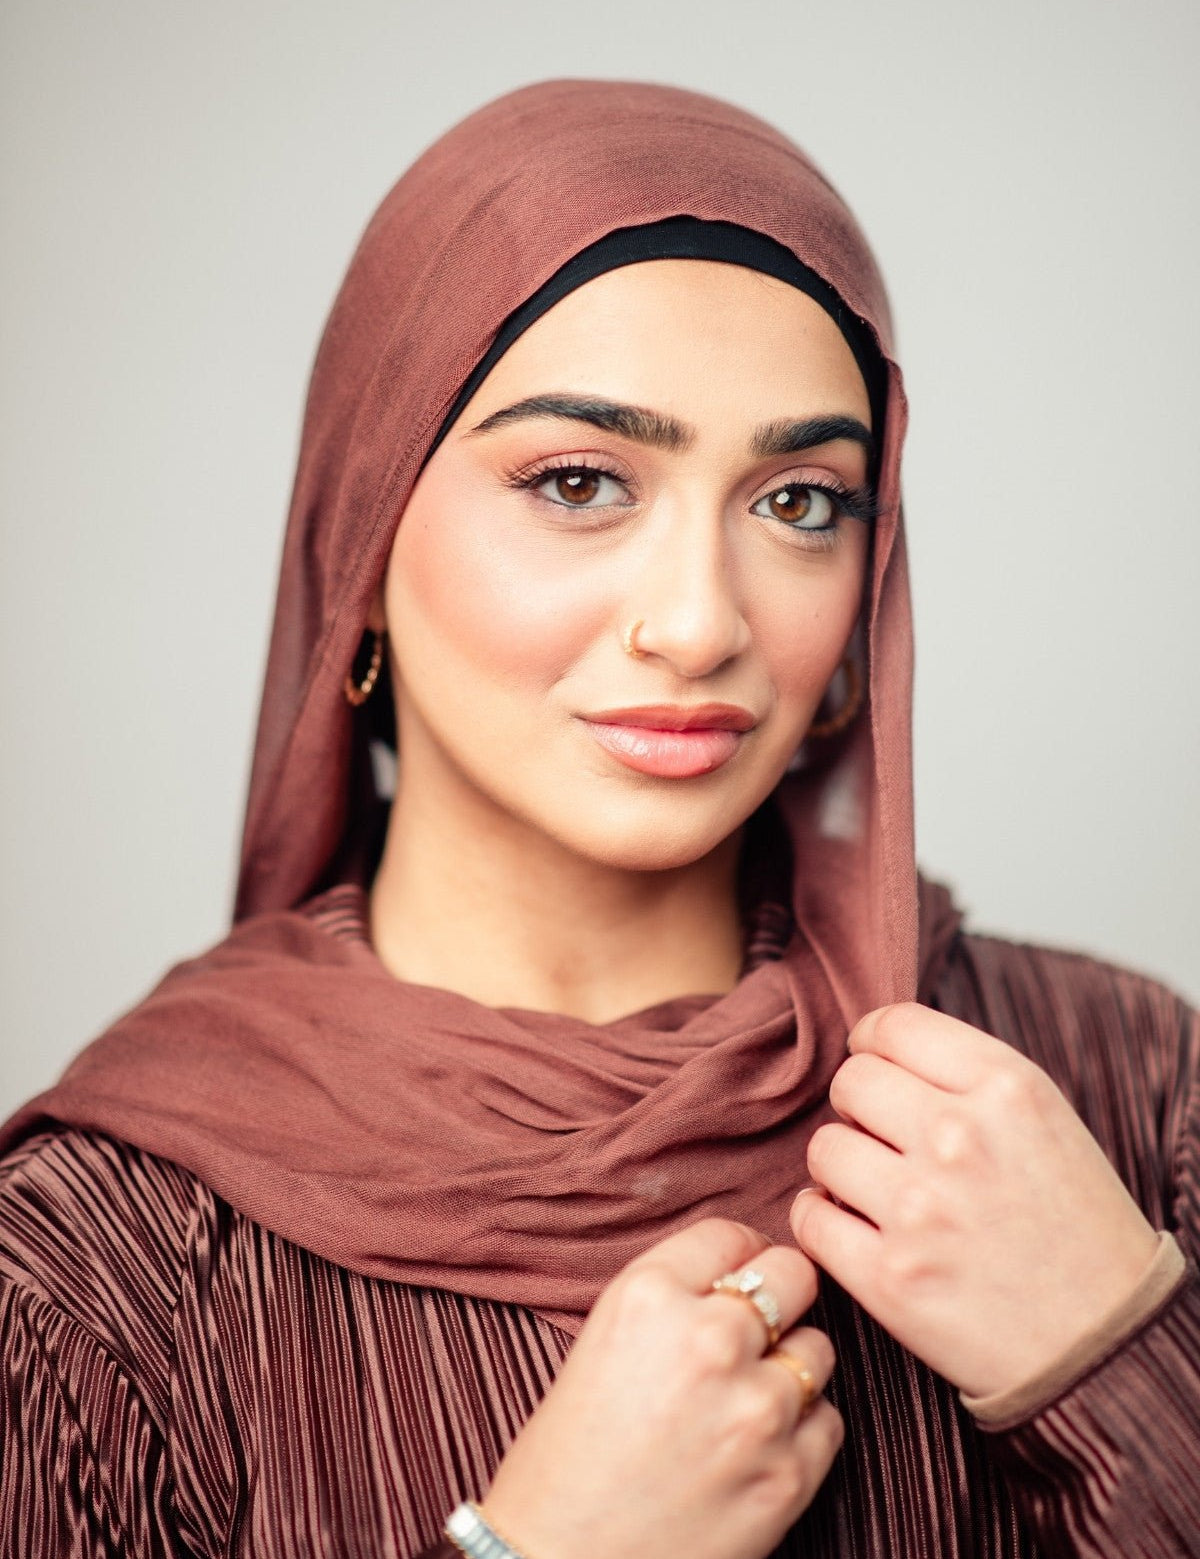 Bamboo Modal Hijab - Bronzite - LuxHijabs